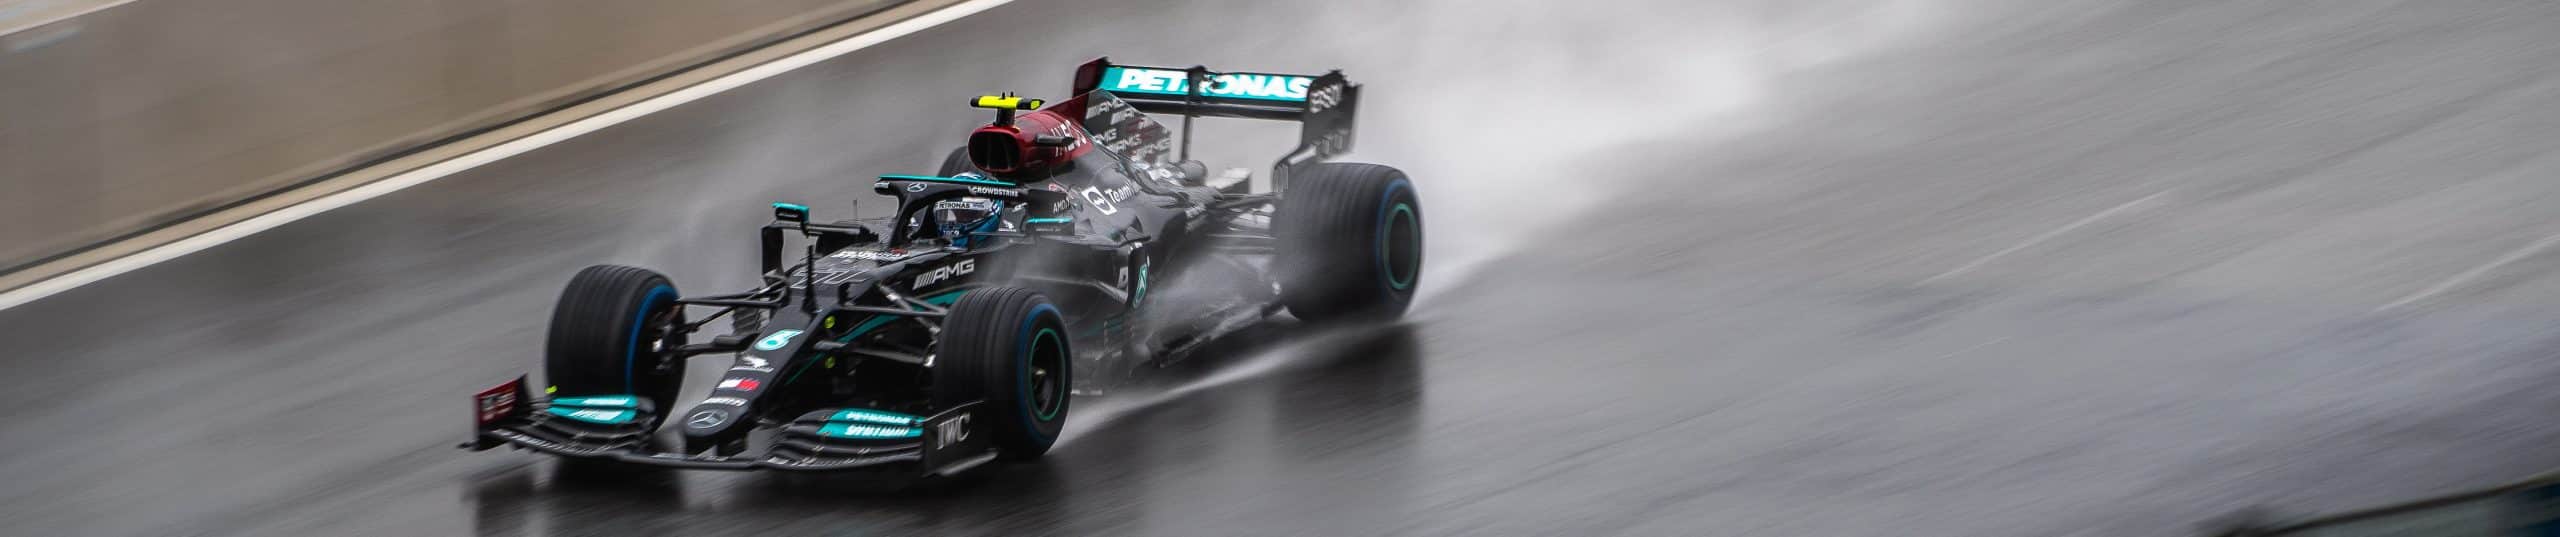 Reifentypen in der Formel 1 - Regenreifen